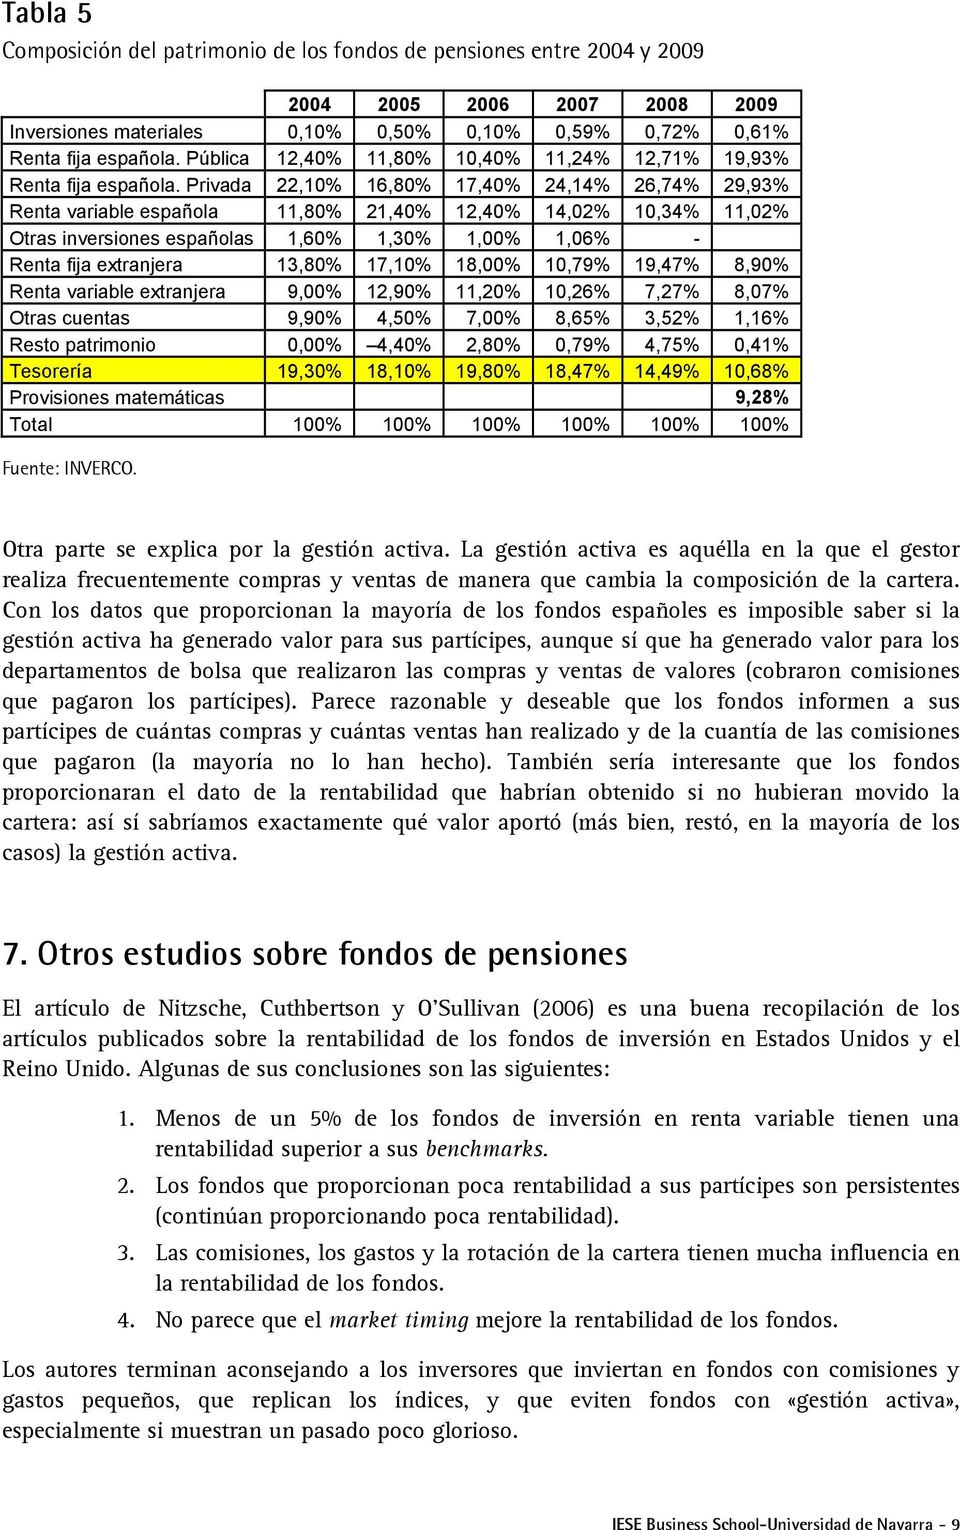 Privada 22,10% 16,80% 17,40% 24,14% 26,74% 29,93% Renta variable española 11,80% 21,40% 12,40% 14,02% 10,34% 11,02% Otras inversiones españolas 1,60% 1,30% 1,00% 1,06% - Renta fija extranjera 13,80%